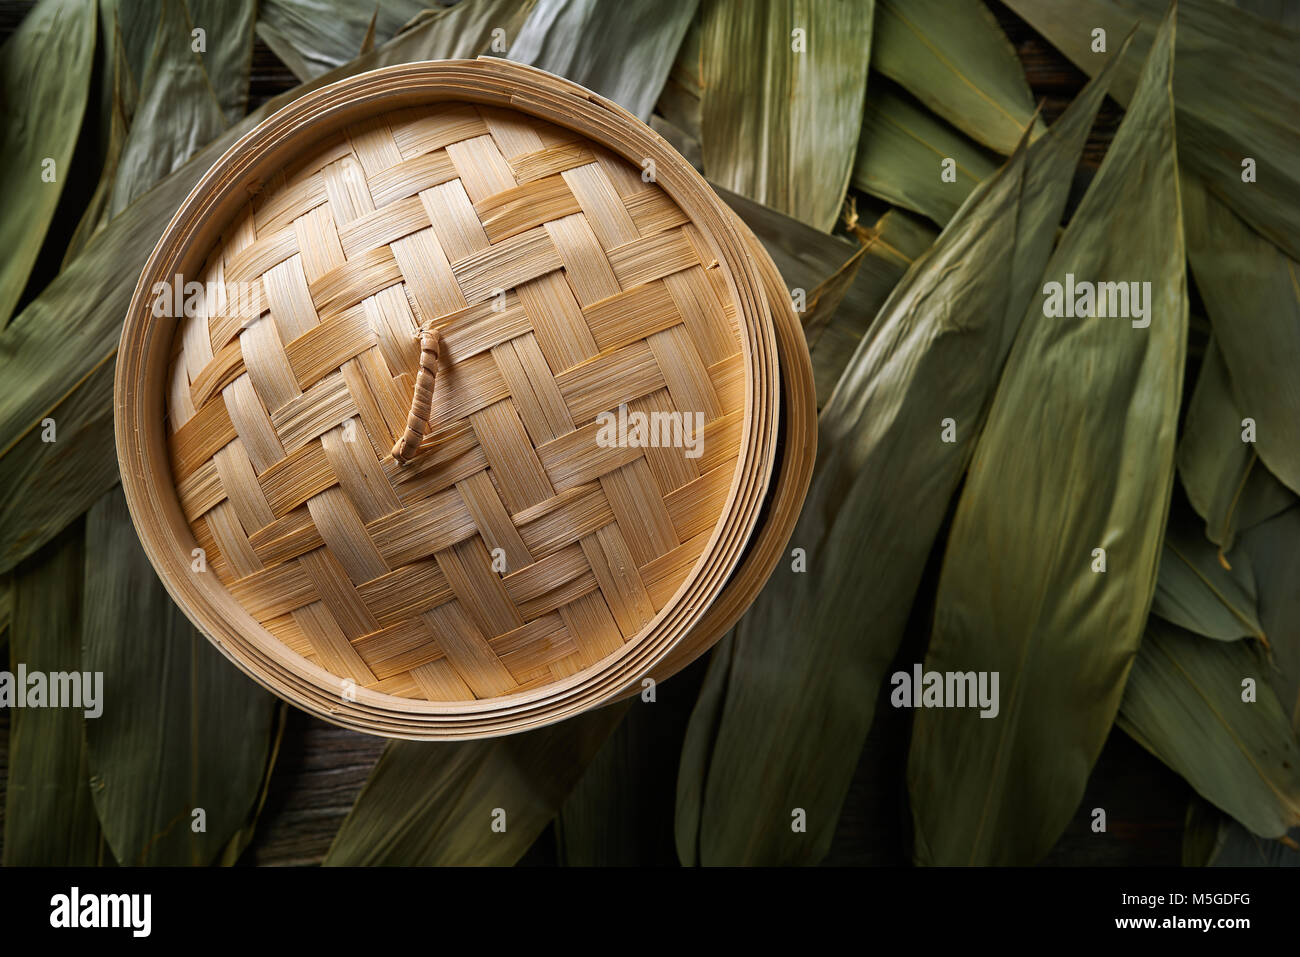 Cuisine asiatique bamboo steamer pour cuisson vapeur recettes sur leafs Banque D'Images